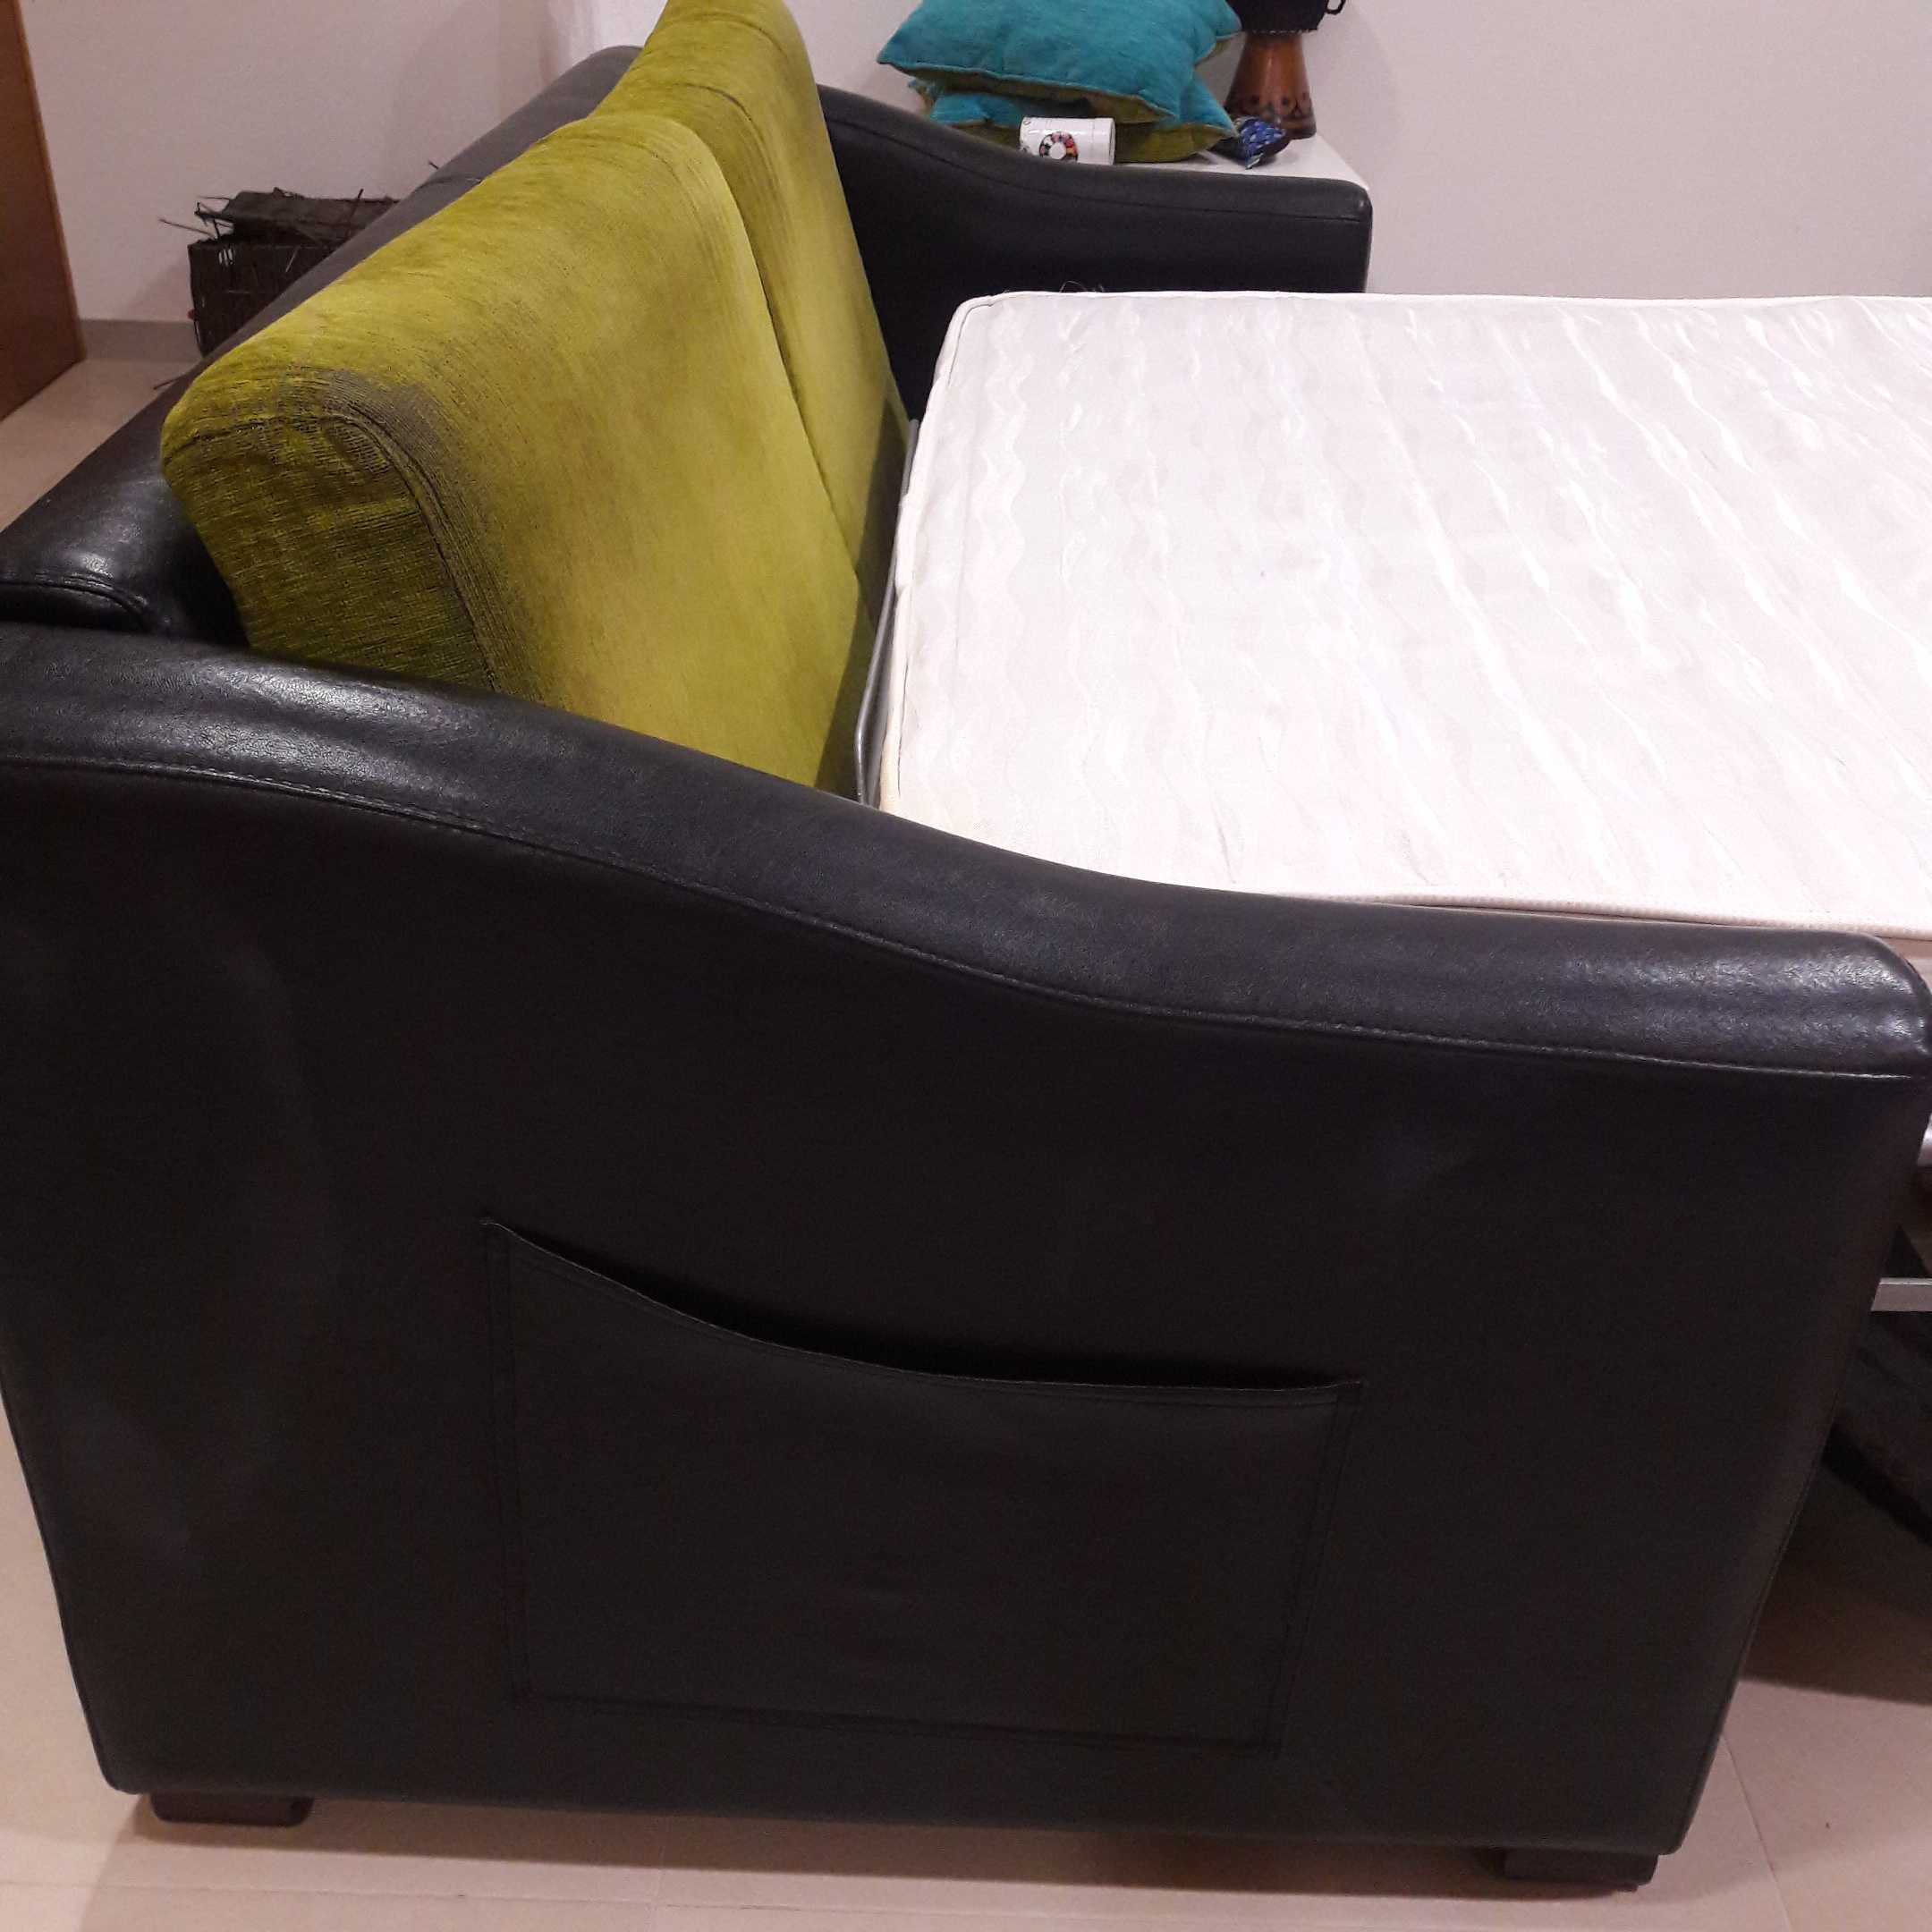 Sofá de 3 lugares com cama incorporada